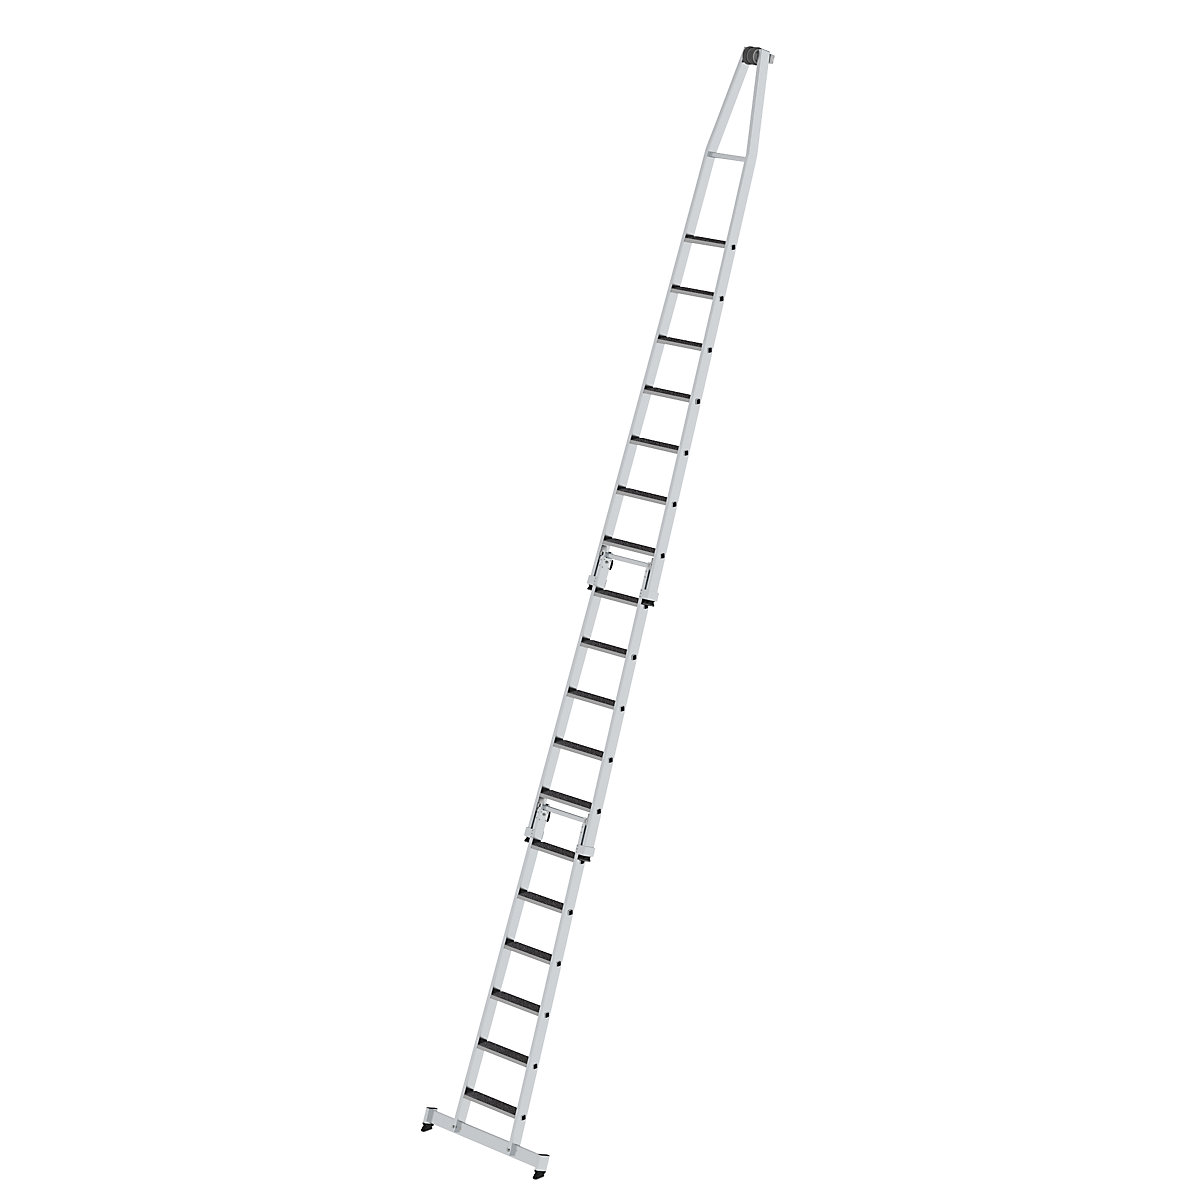 Escada para limpar vidros – MUNK, com apoio para os pés, 3 peças, 18 degraus-11